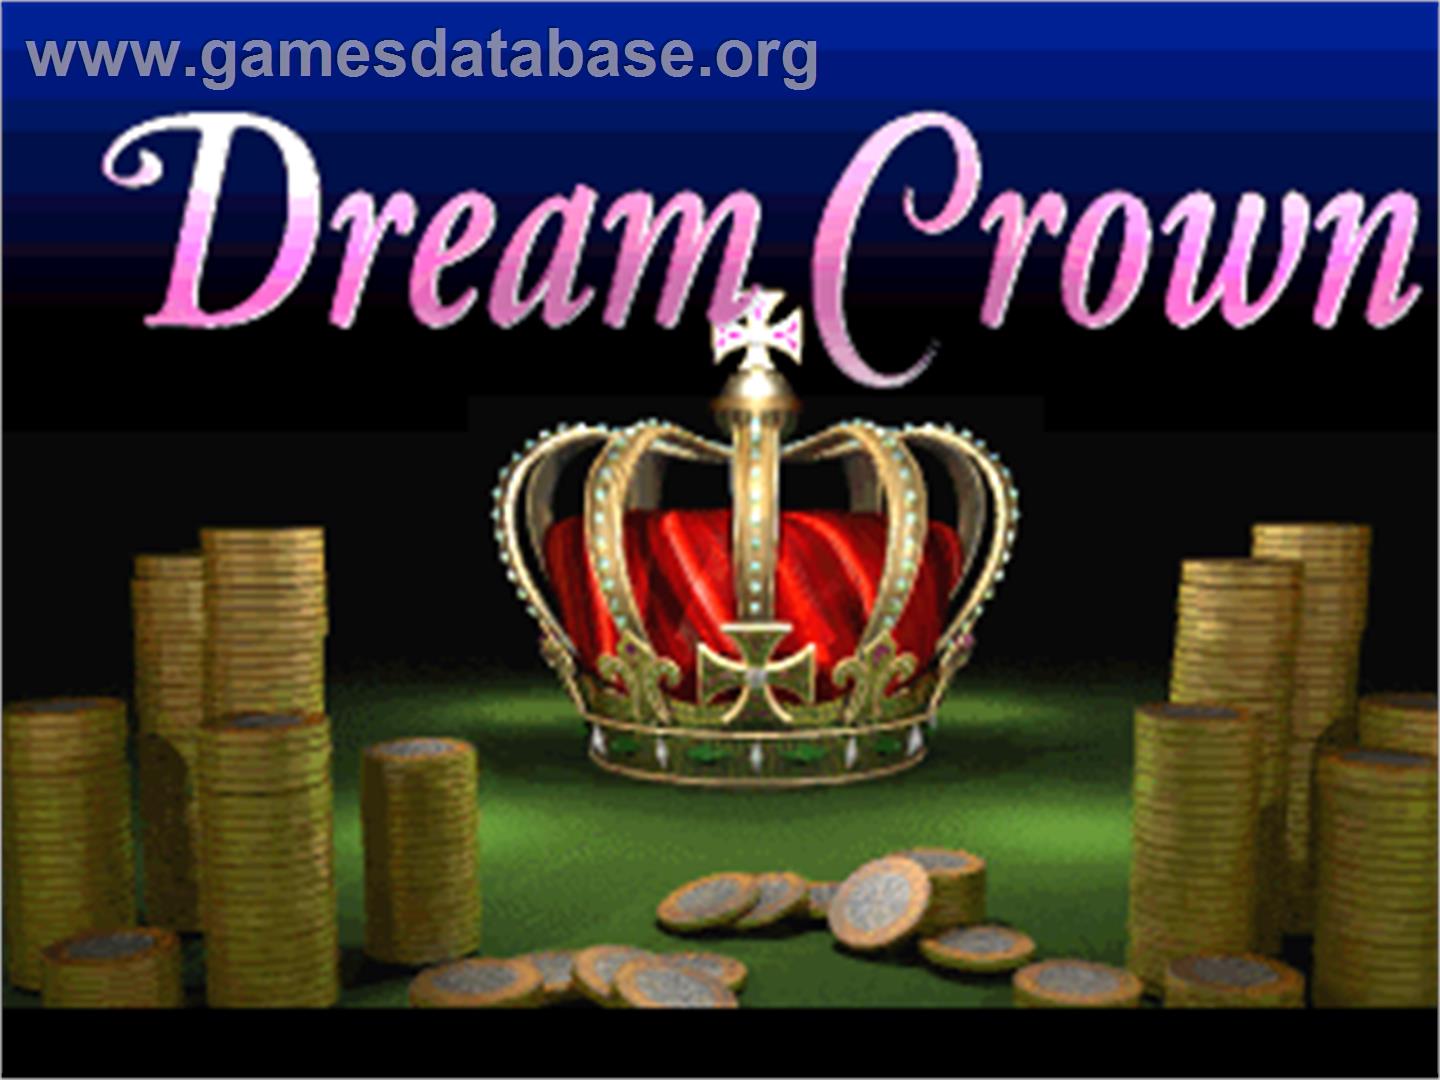 Dream Crown - Arcade - Artwork - Title Screen